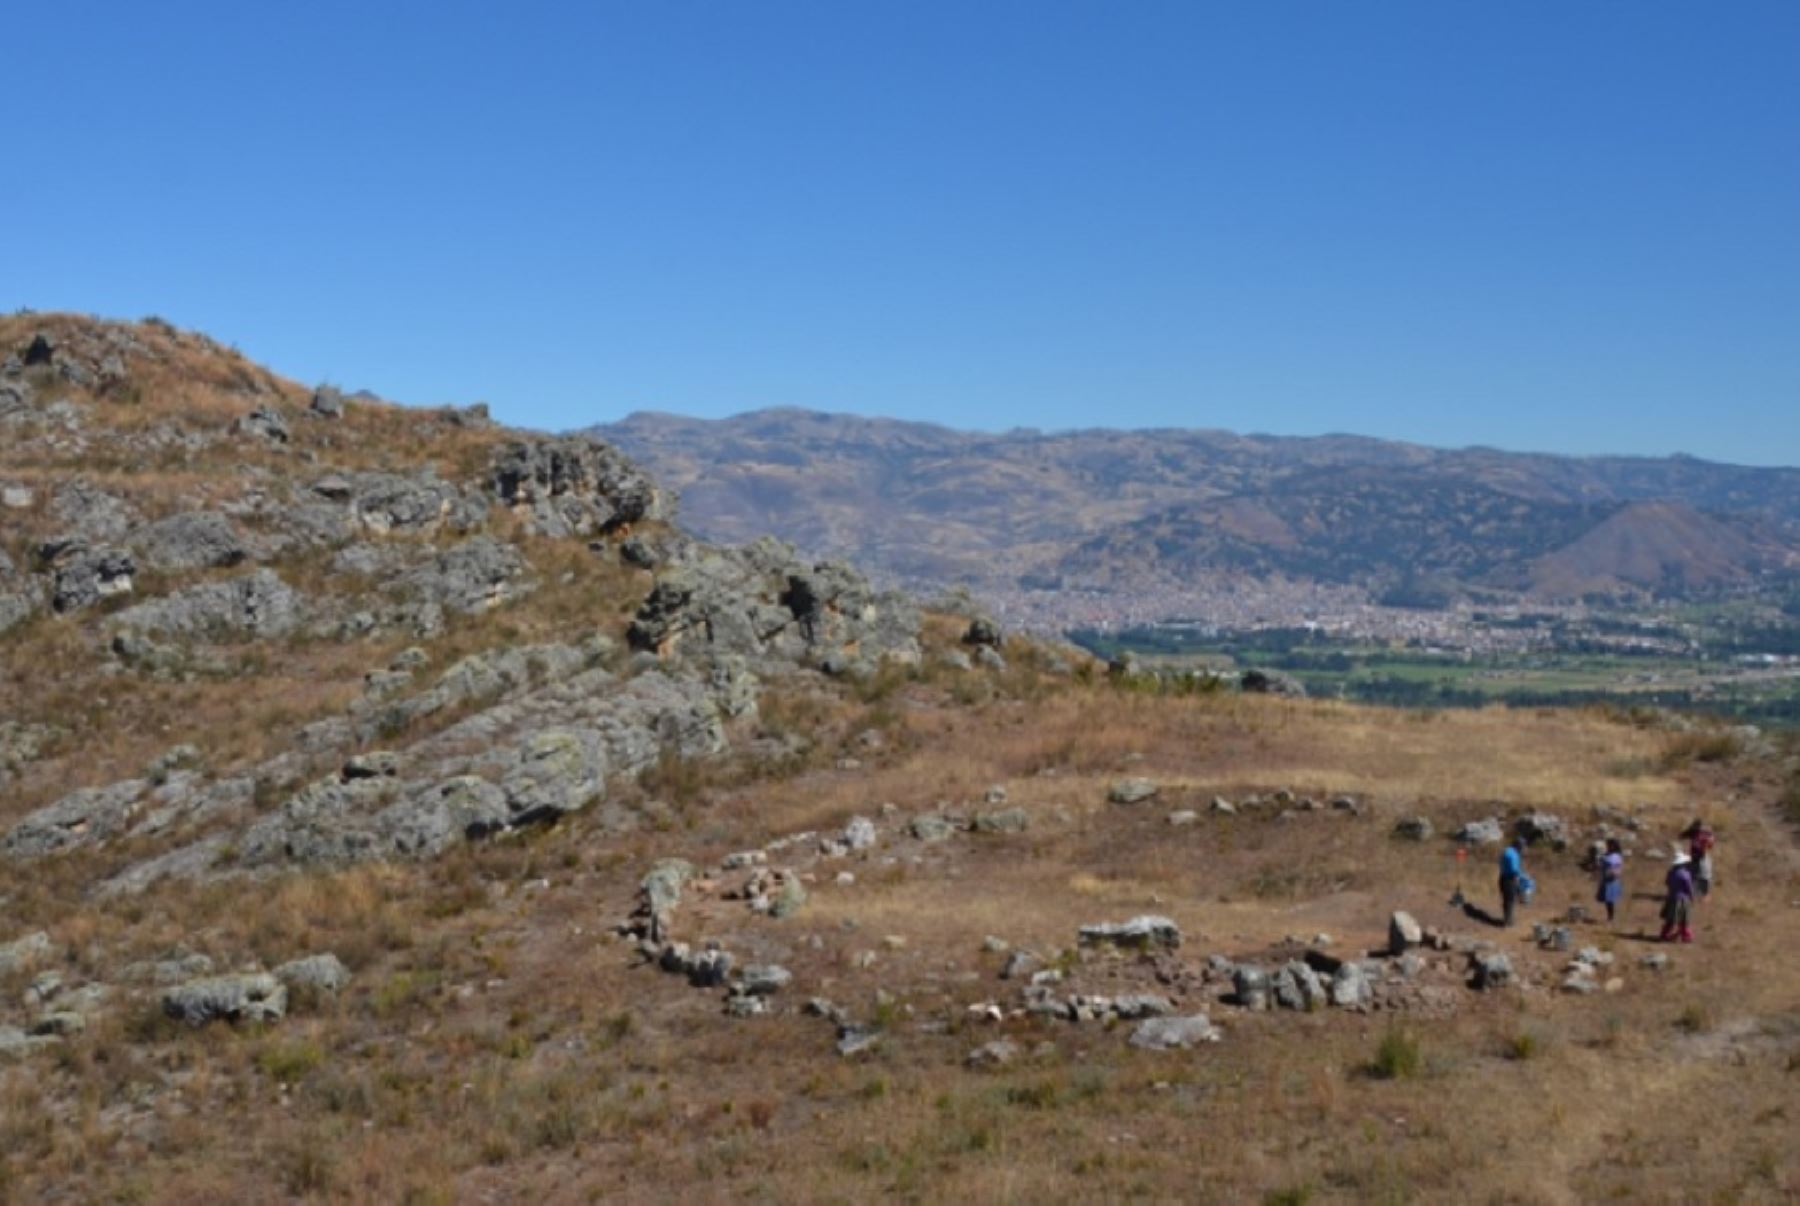 La plaza circular megalítica de Callacpuma es el ejemplo más antiguo de arquitectura ceremonial megalítica en la sierra norte del Perú. Foto: Proyecto de Investigación Arqueológica Callacpuma.